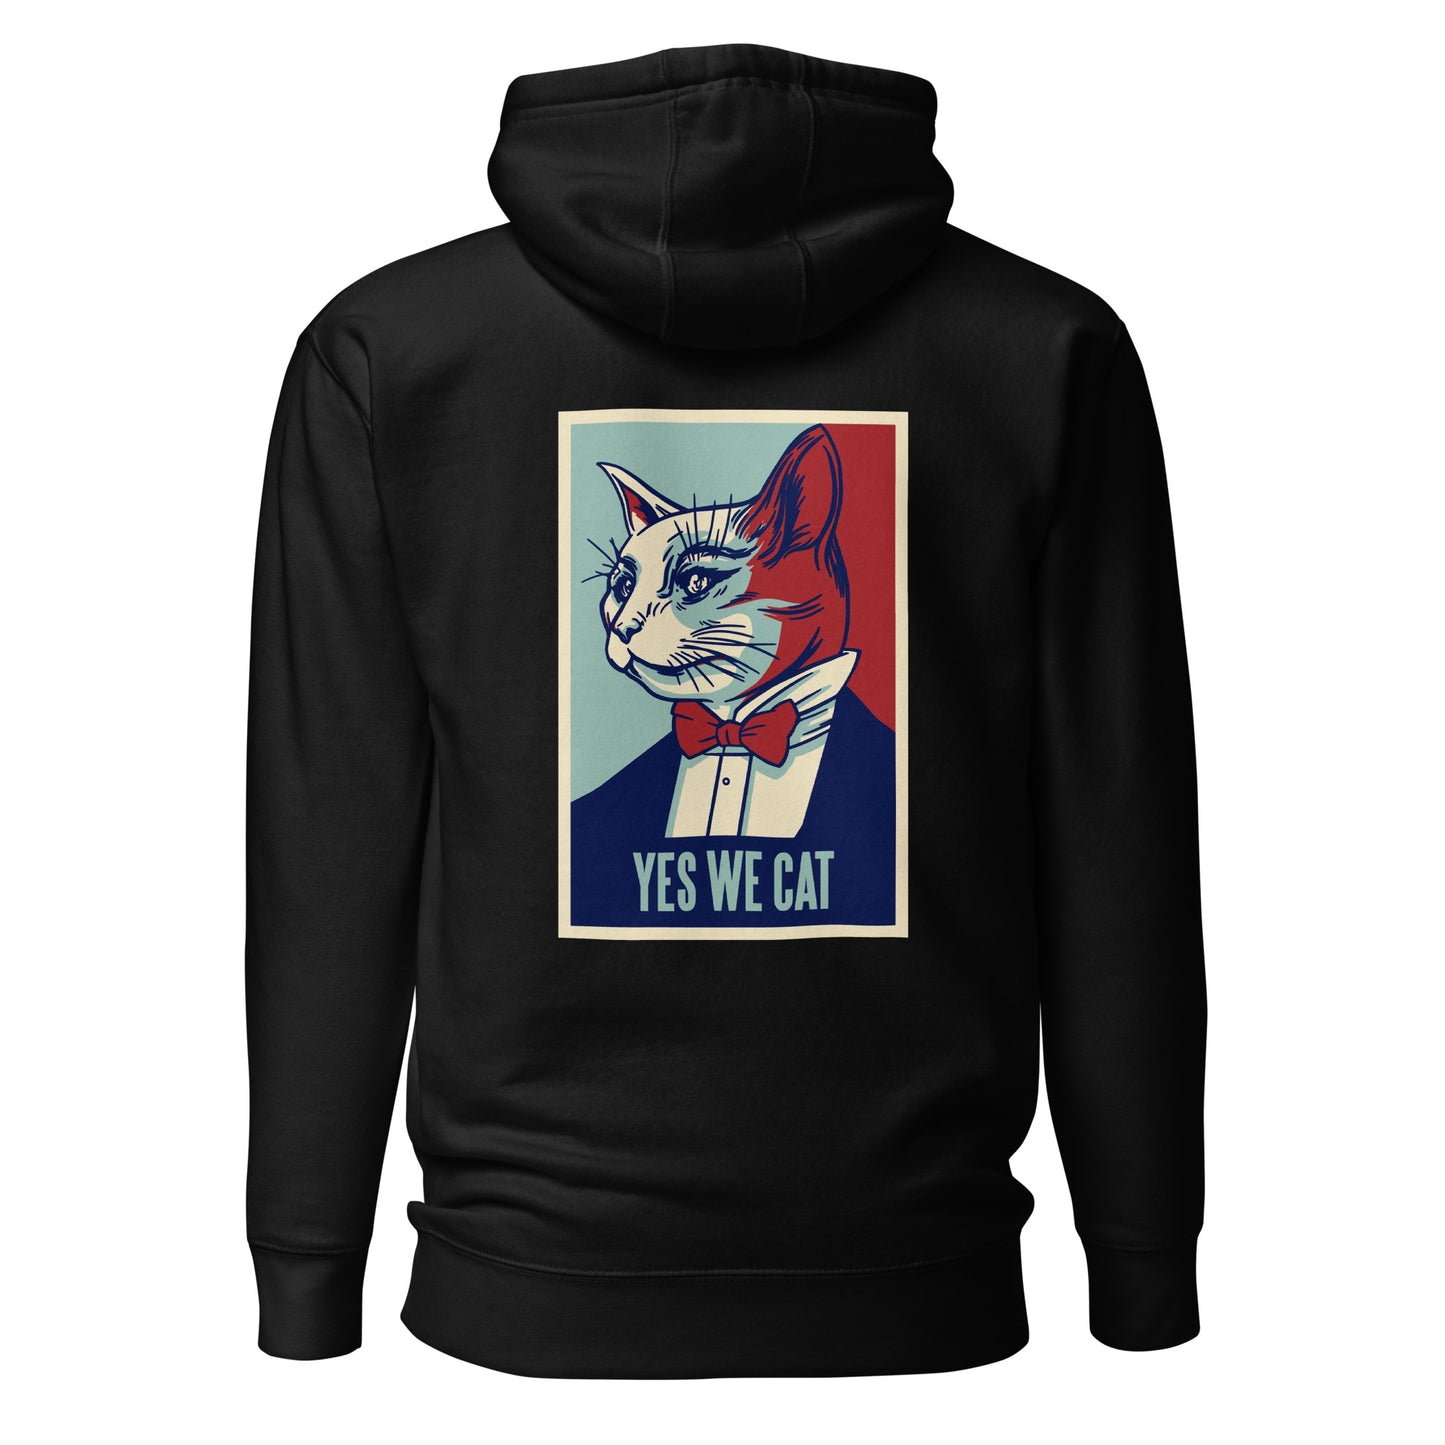 "Yes we cat" women's hoodie